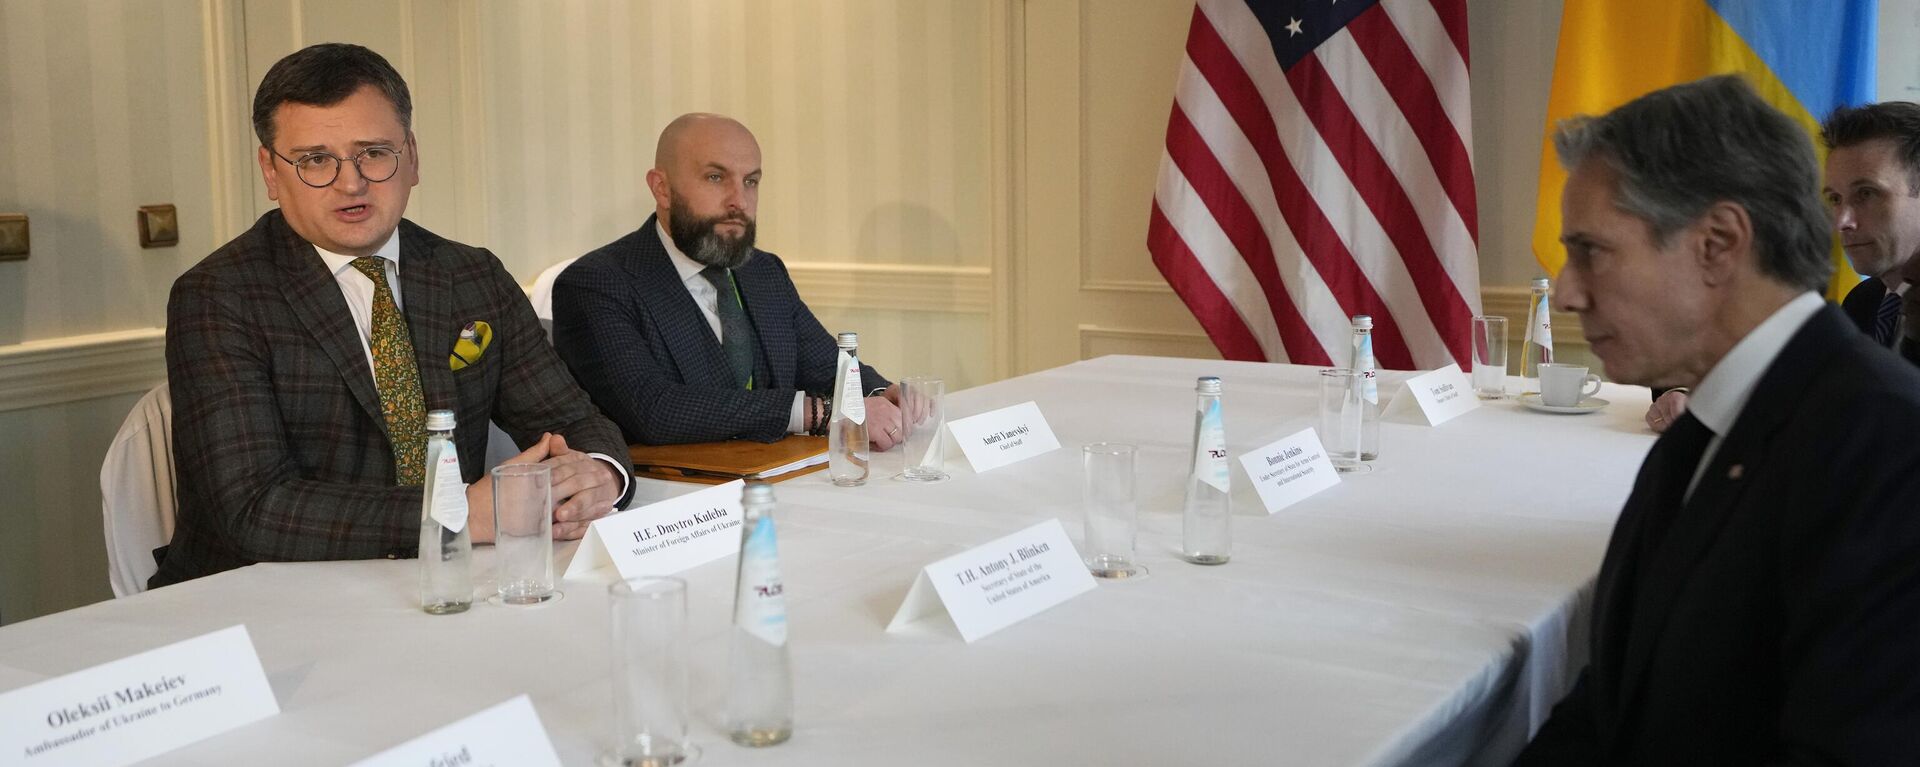 O secretário de Estado dos Estados Unidos, Antony Blinken, em primeiro plano à direita, encontra-se com o ministro das Relações Exteriores da Ucrânia, Dmitry Kuleba, à esquerda, na Conferência de Segurança de Munique em Munique, 18 de fevereiro de 2023. - Sputnik Brasil, 1920, 19.02.2023